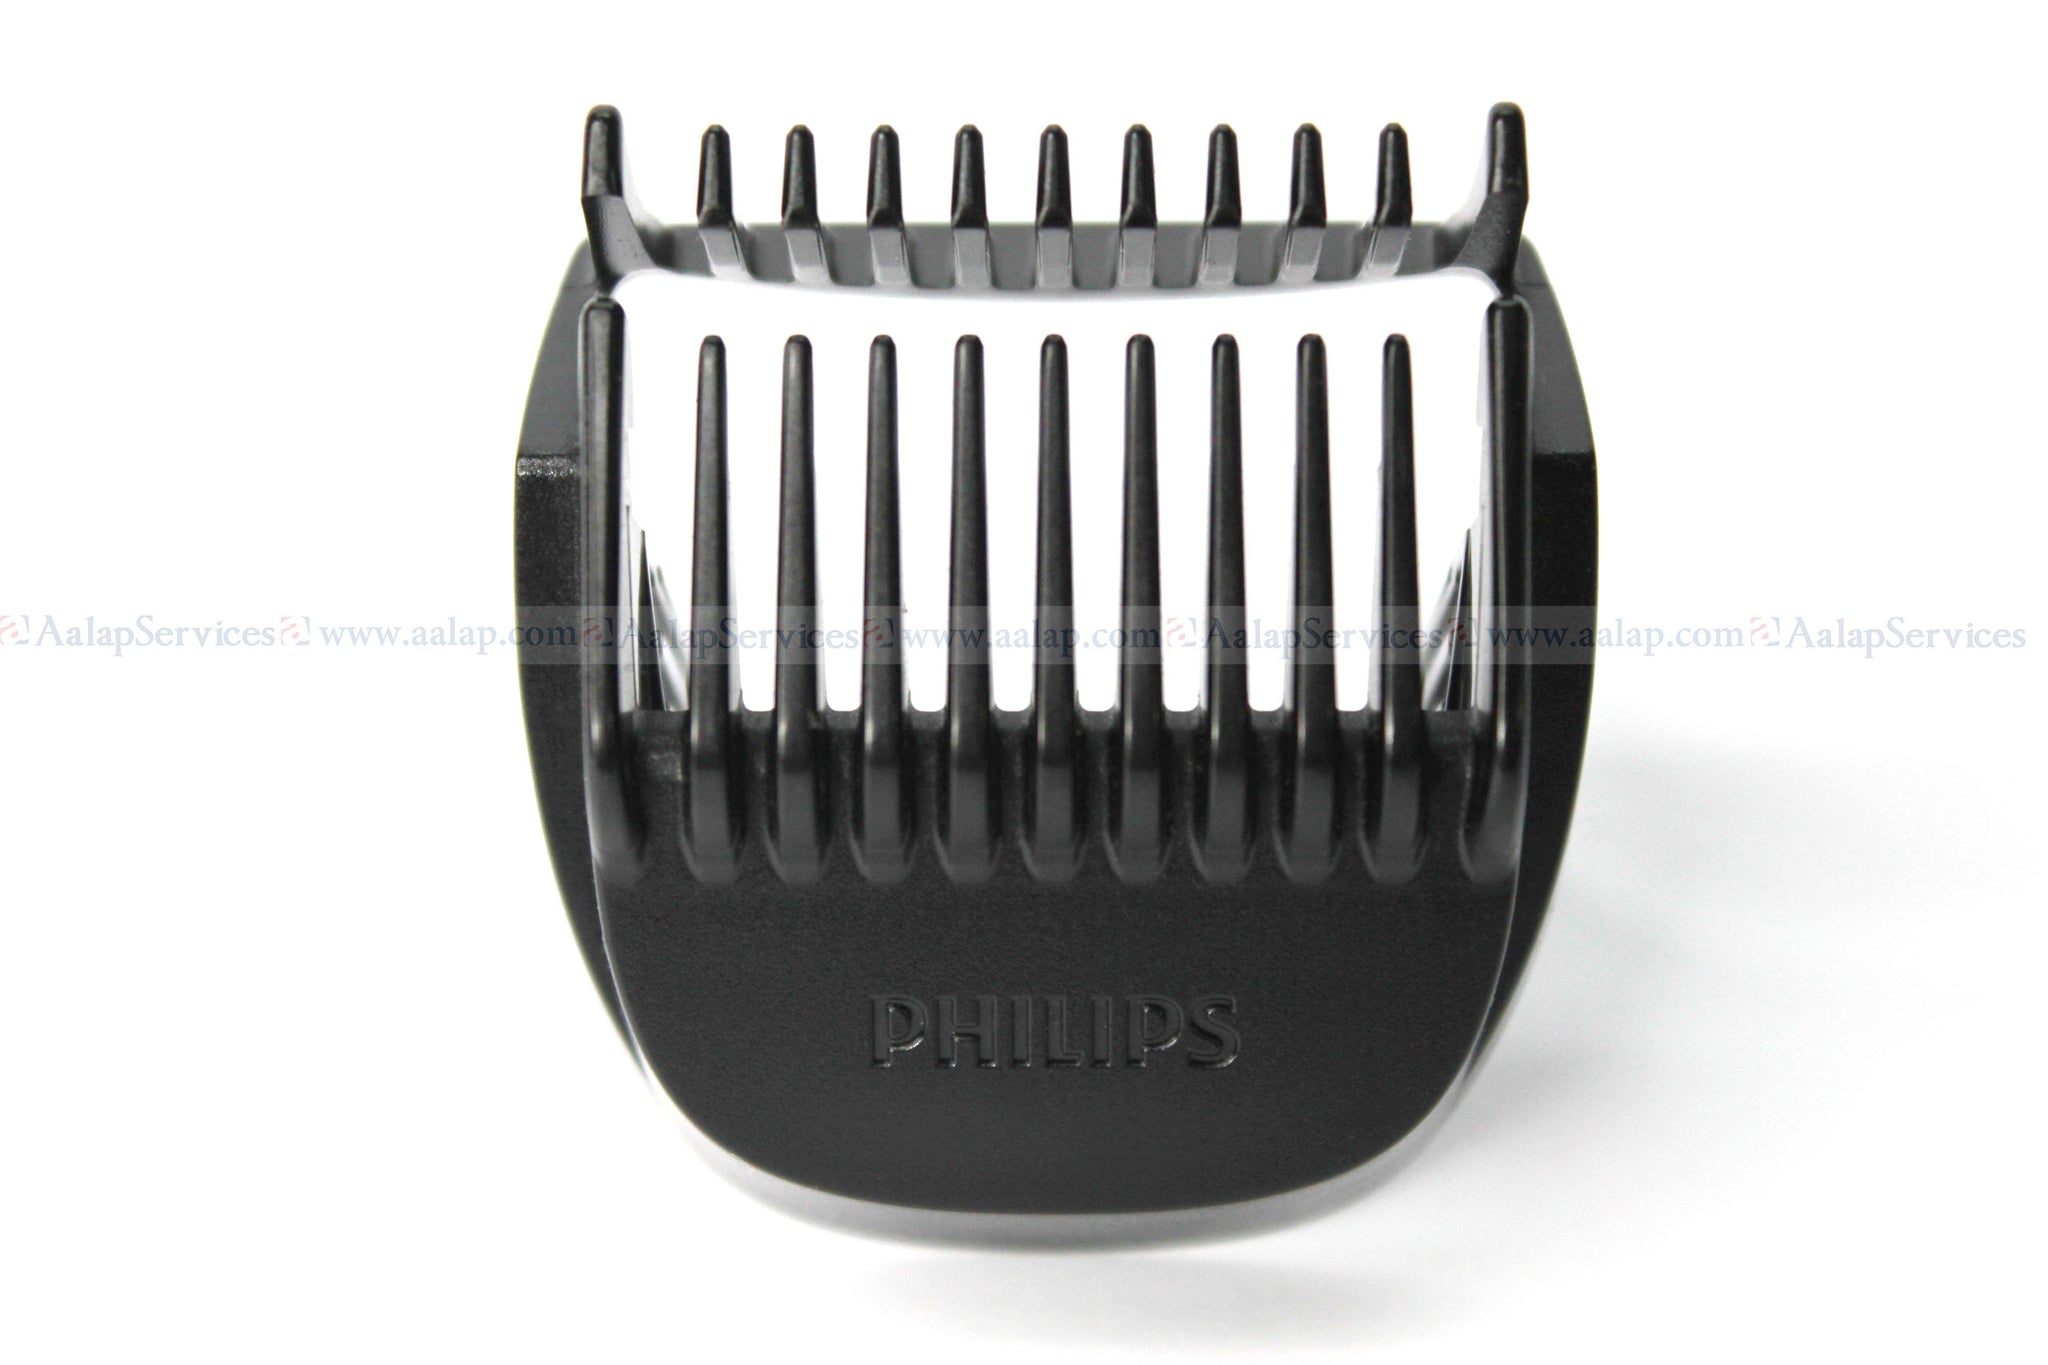 philips bt3215 beard trimmer